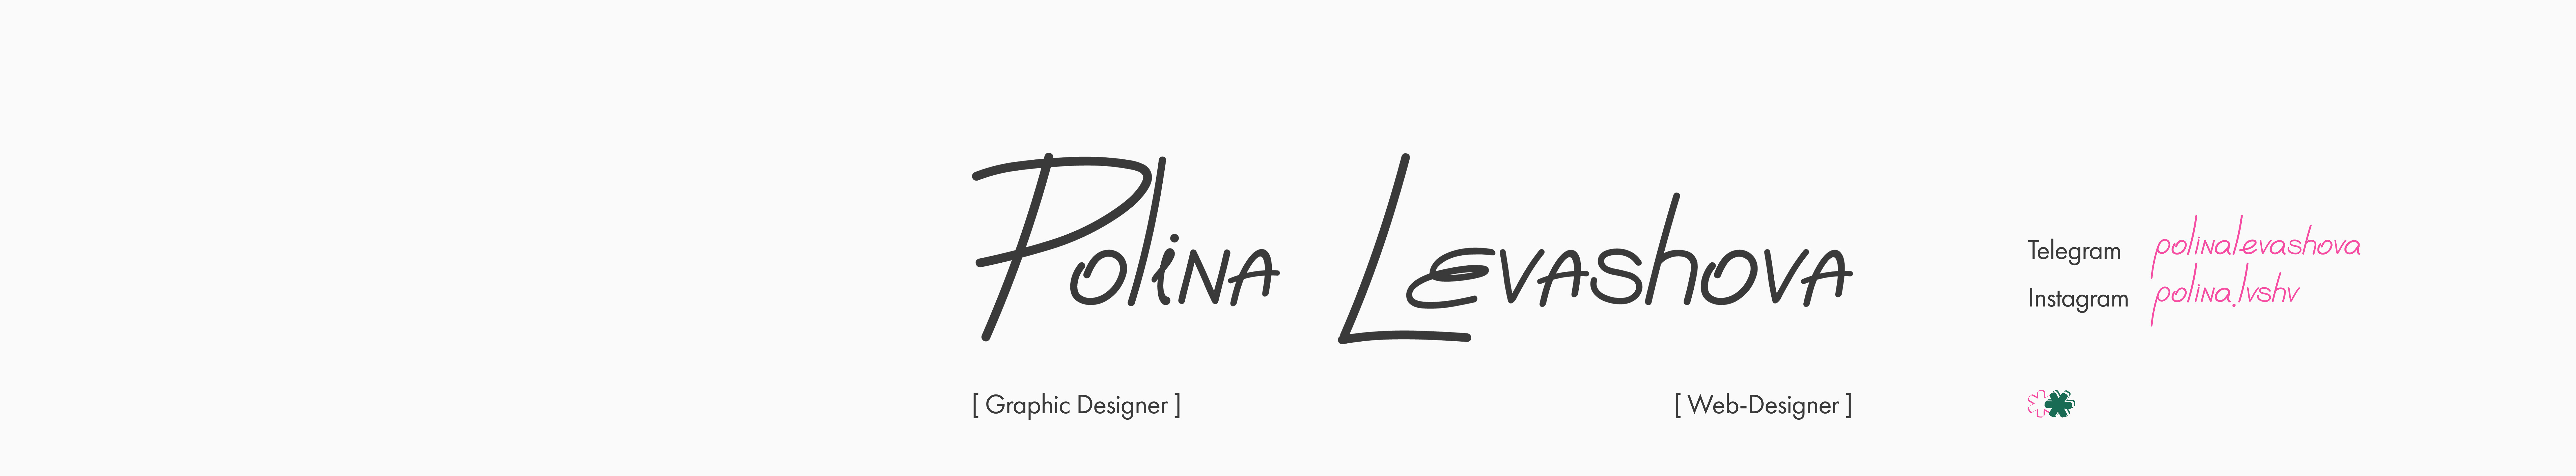 Polina Levashova's profile banner